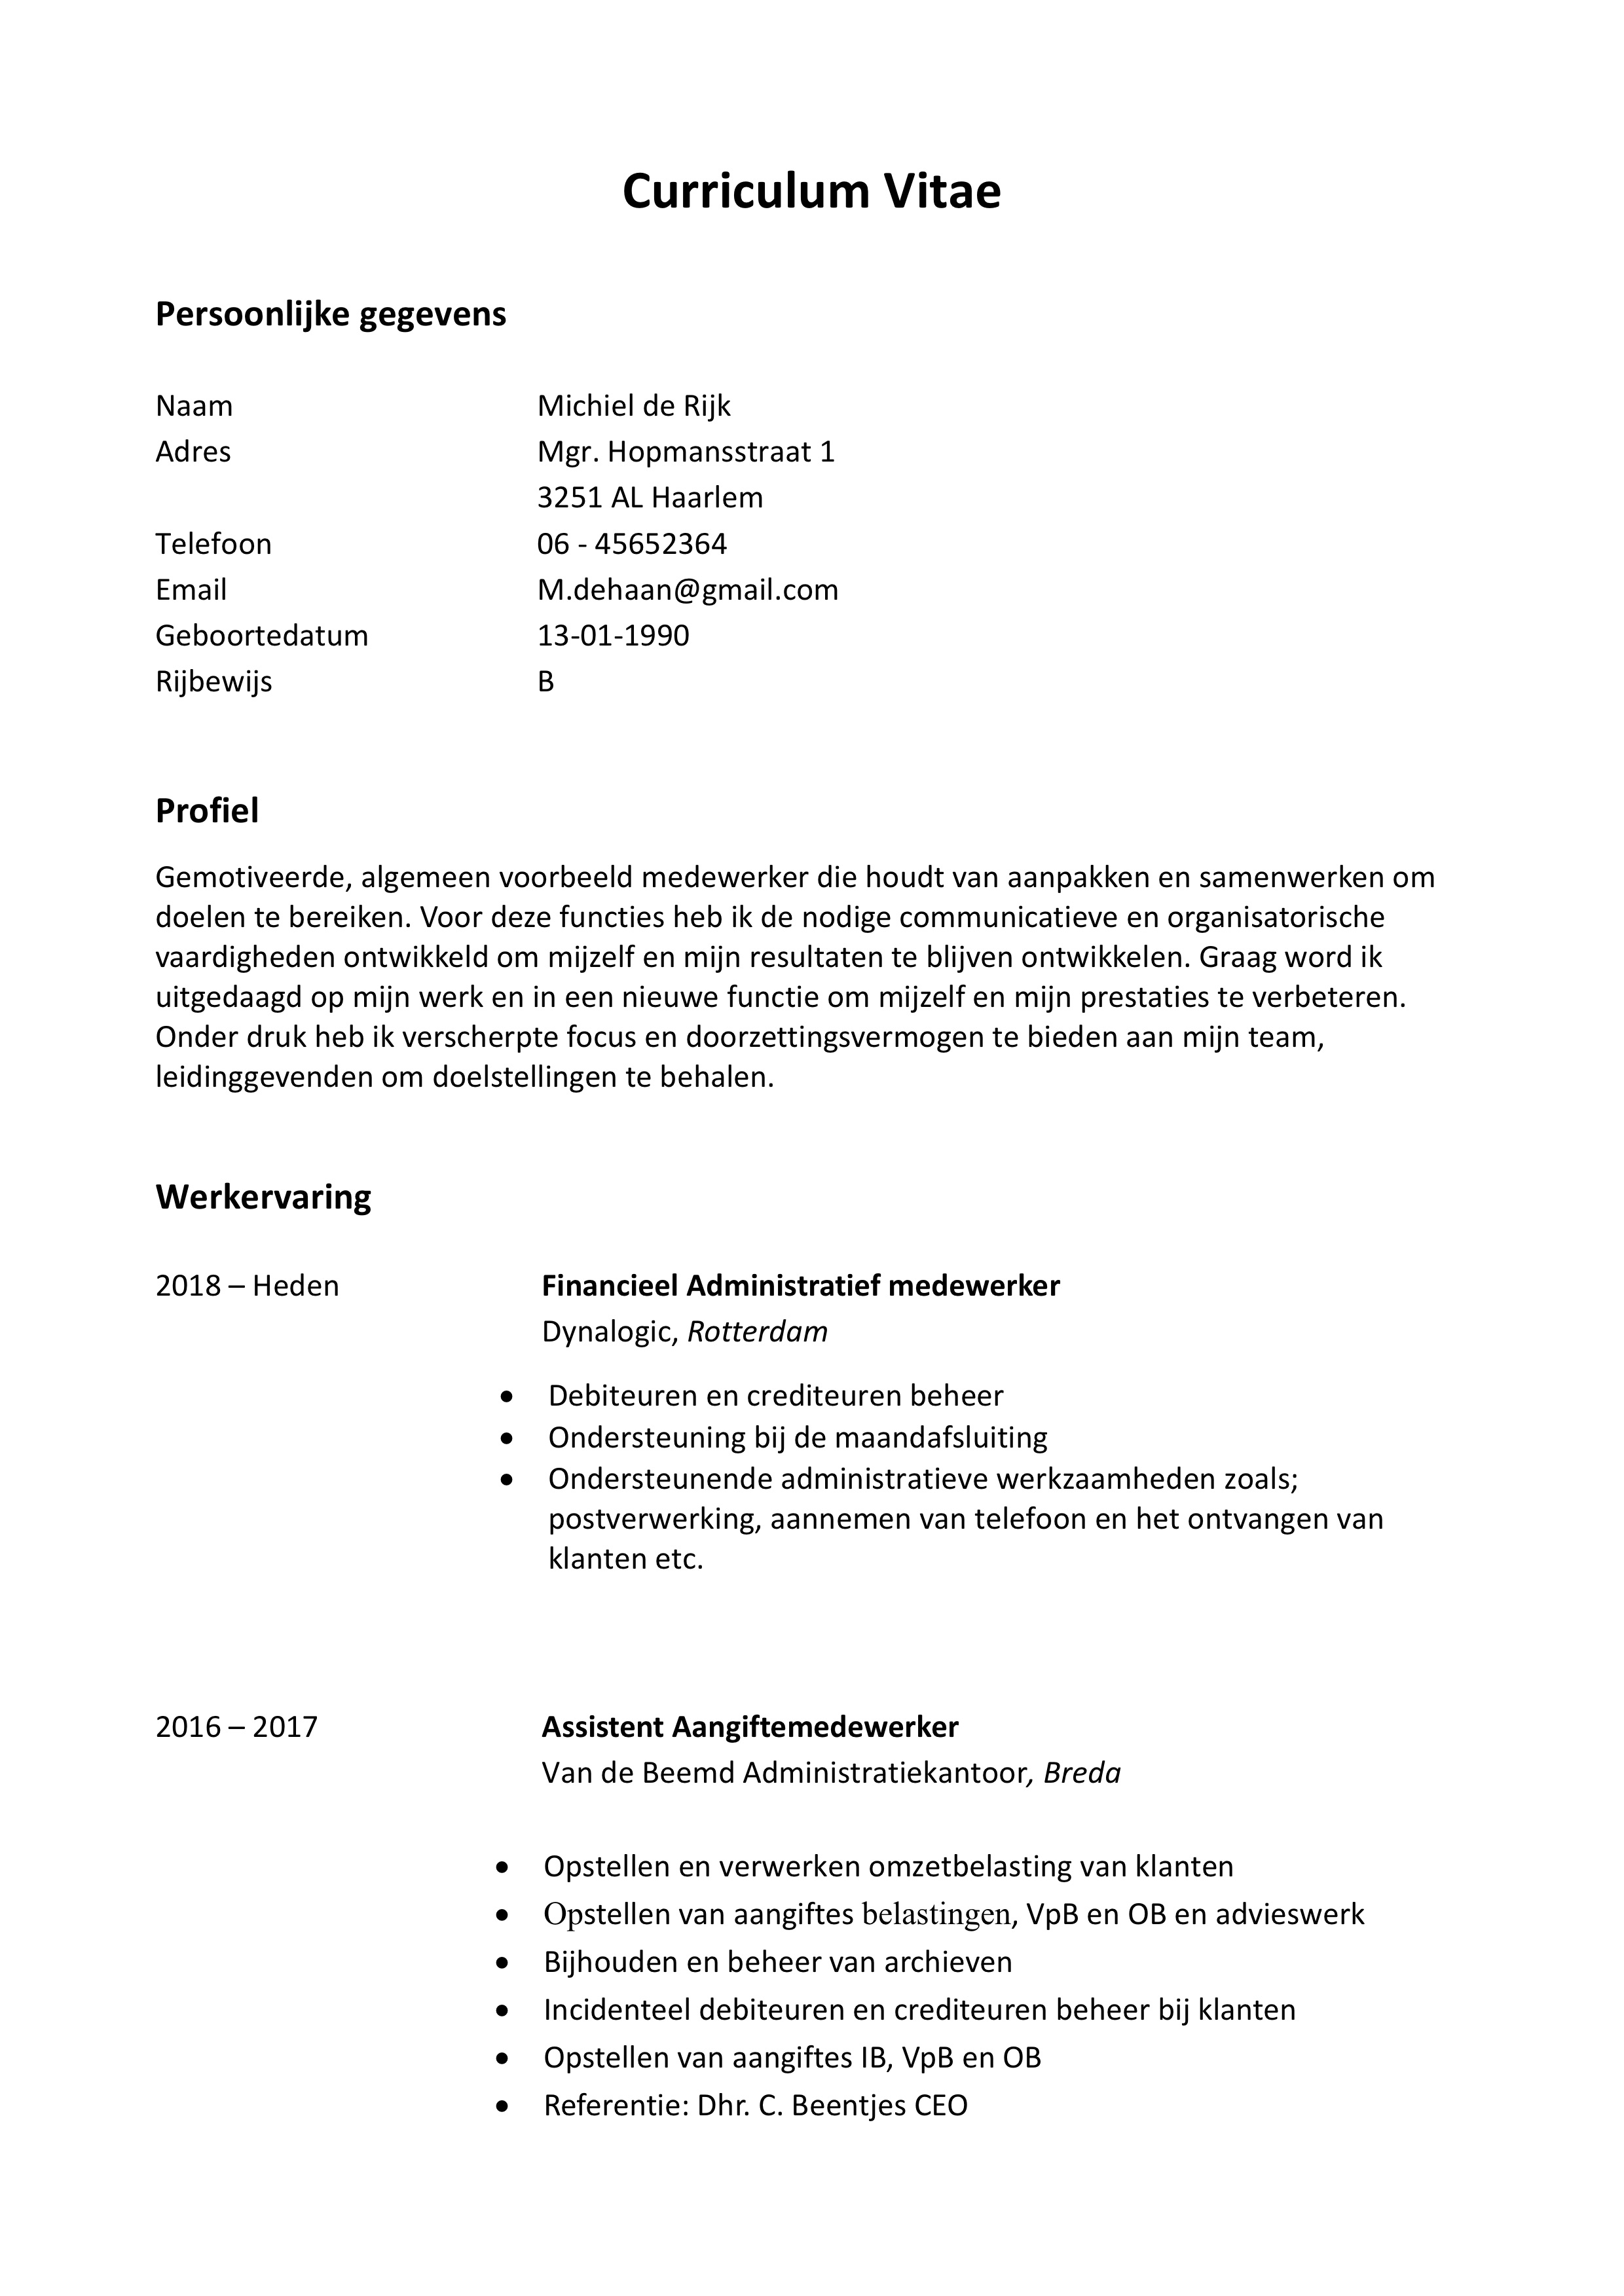 Spiksplinternieuw CV Voorbeeld (2020) & CV Maken | 34+ CV's in Word & PDF PS-57